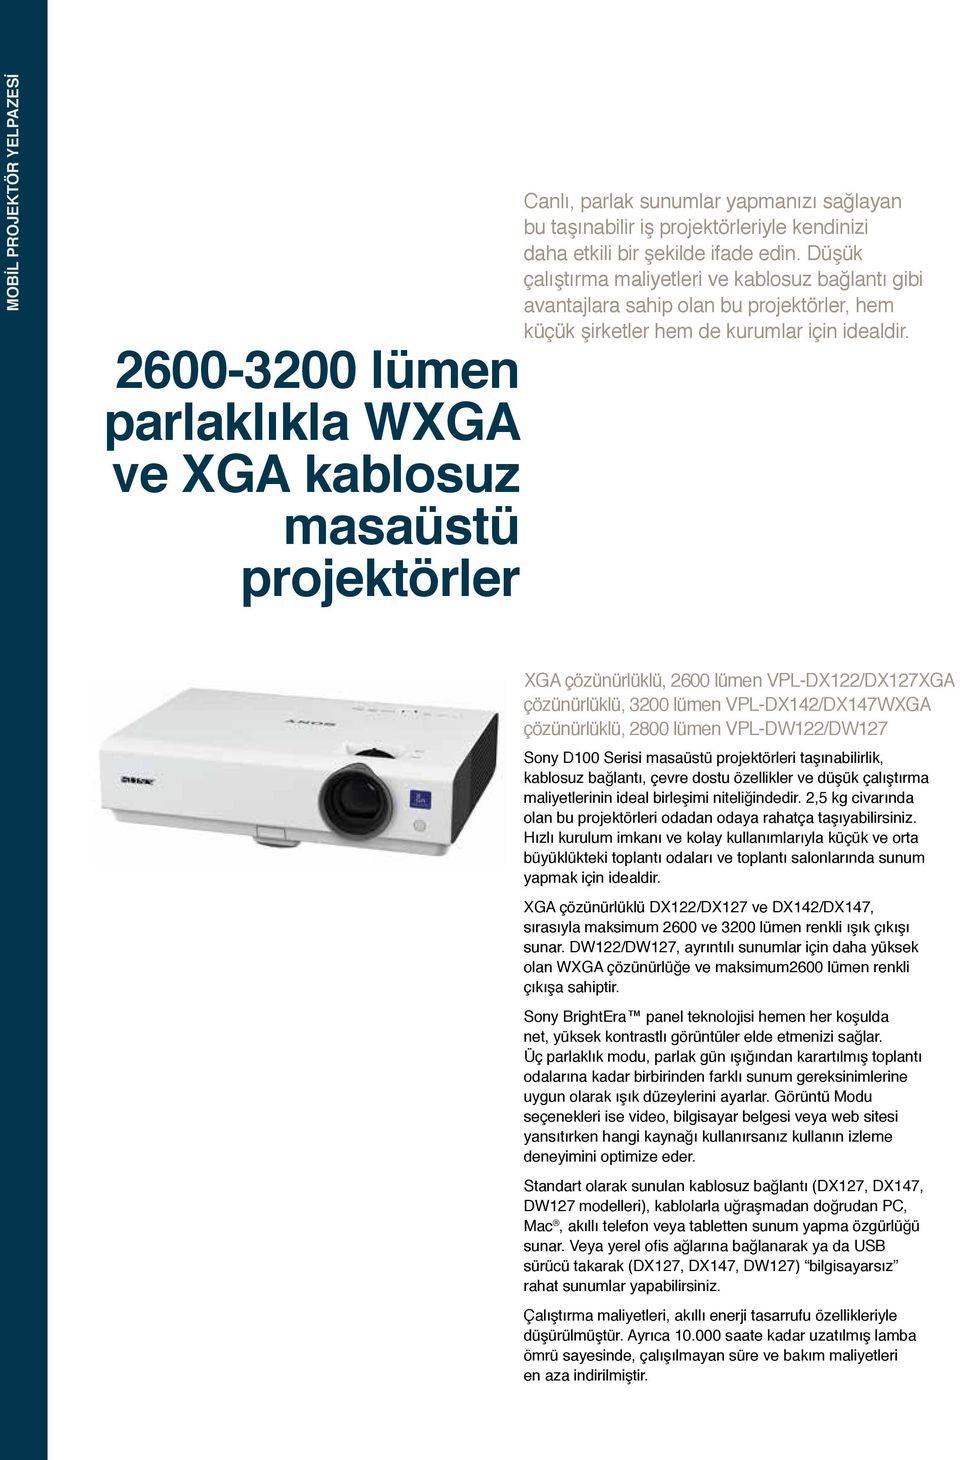 XGA çözünürlüklü, 2600 lümen VPL-DX122/DX127XGA çözünürlüklü, 3200 lümen VPL-DX142/DX147WXGA çözünürlüklü, 2800 lümen VPL-DW122/DW127 Sony D100 Serisi masaüstü projektörleri taşınabilirlik, kablosuz